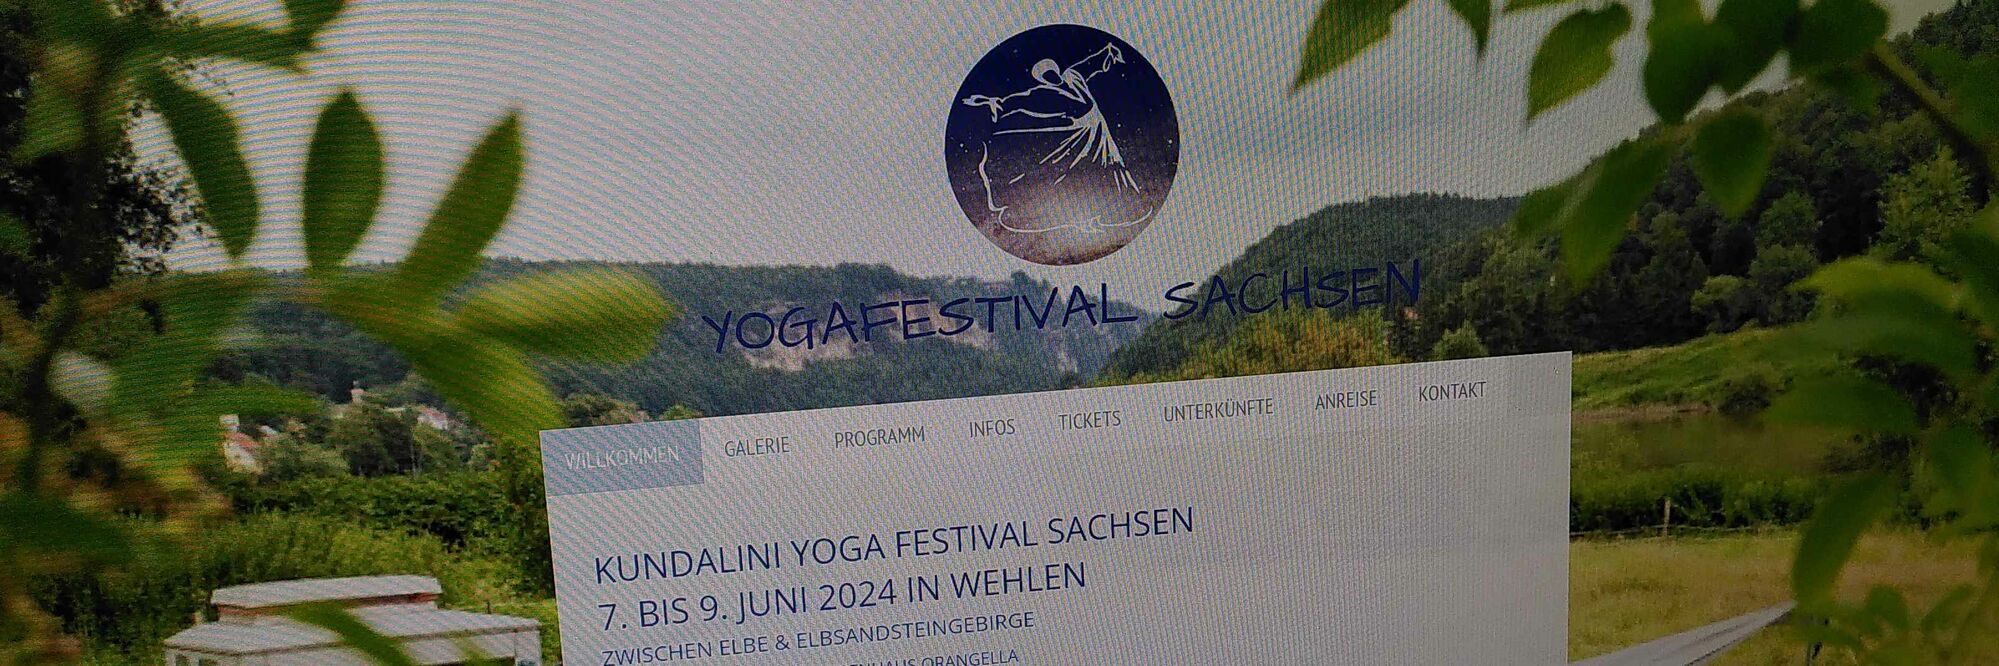 Yogafestival in Sachsen 2024